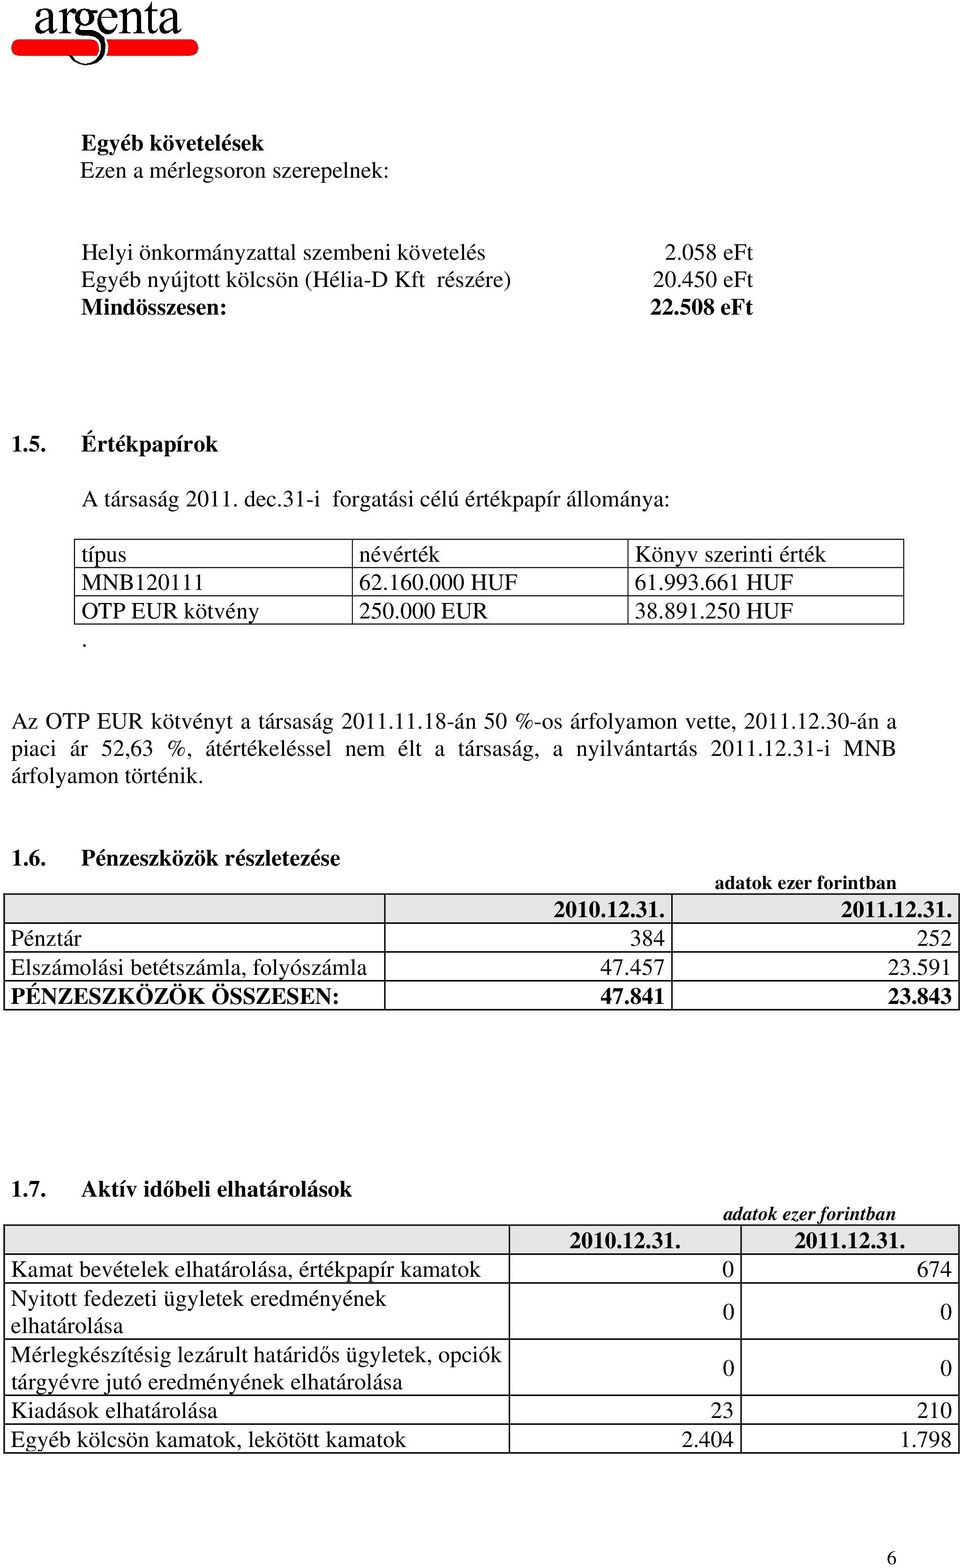 Az OTP EUR kötvényt a társaság 2011.11.18-án 50 %-os árfolyamon vette, 2011.12.30-án a piaci ár 52,63 %, átértékeléssel nem élt a társaság, a nyilvántartás 2011.12.31-i MNB árfolyamon történik. 1.6. Pénzeszközök részletezése 2010.